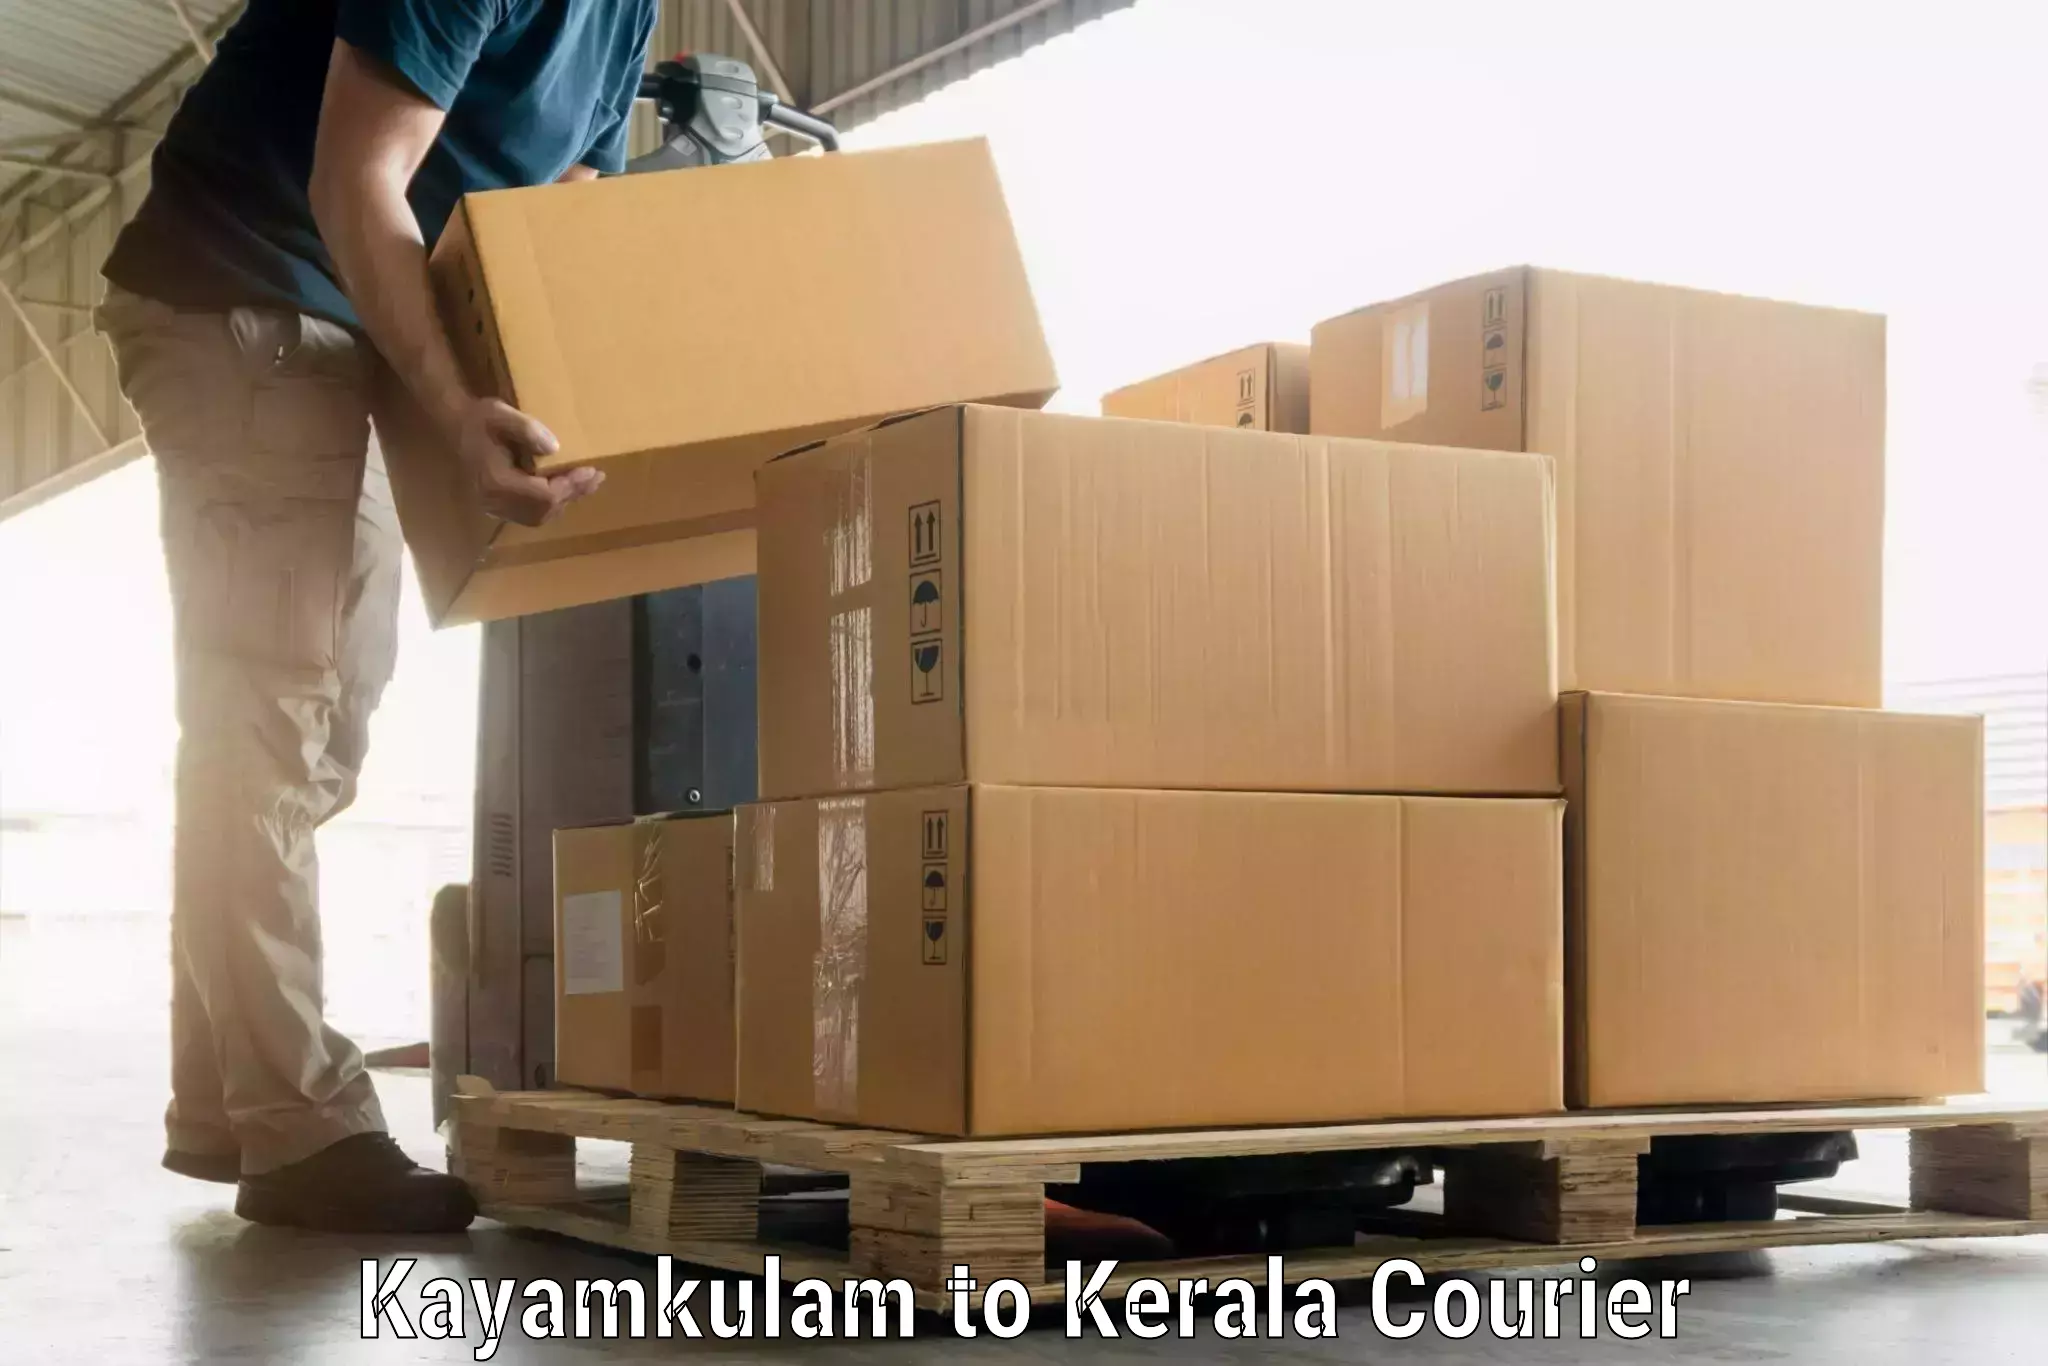 Baggage shipping service Kayamkulam to Kerala